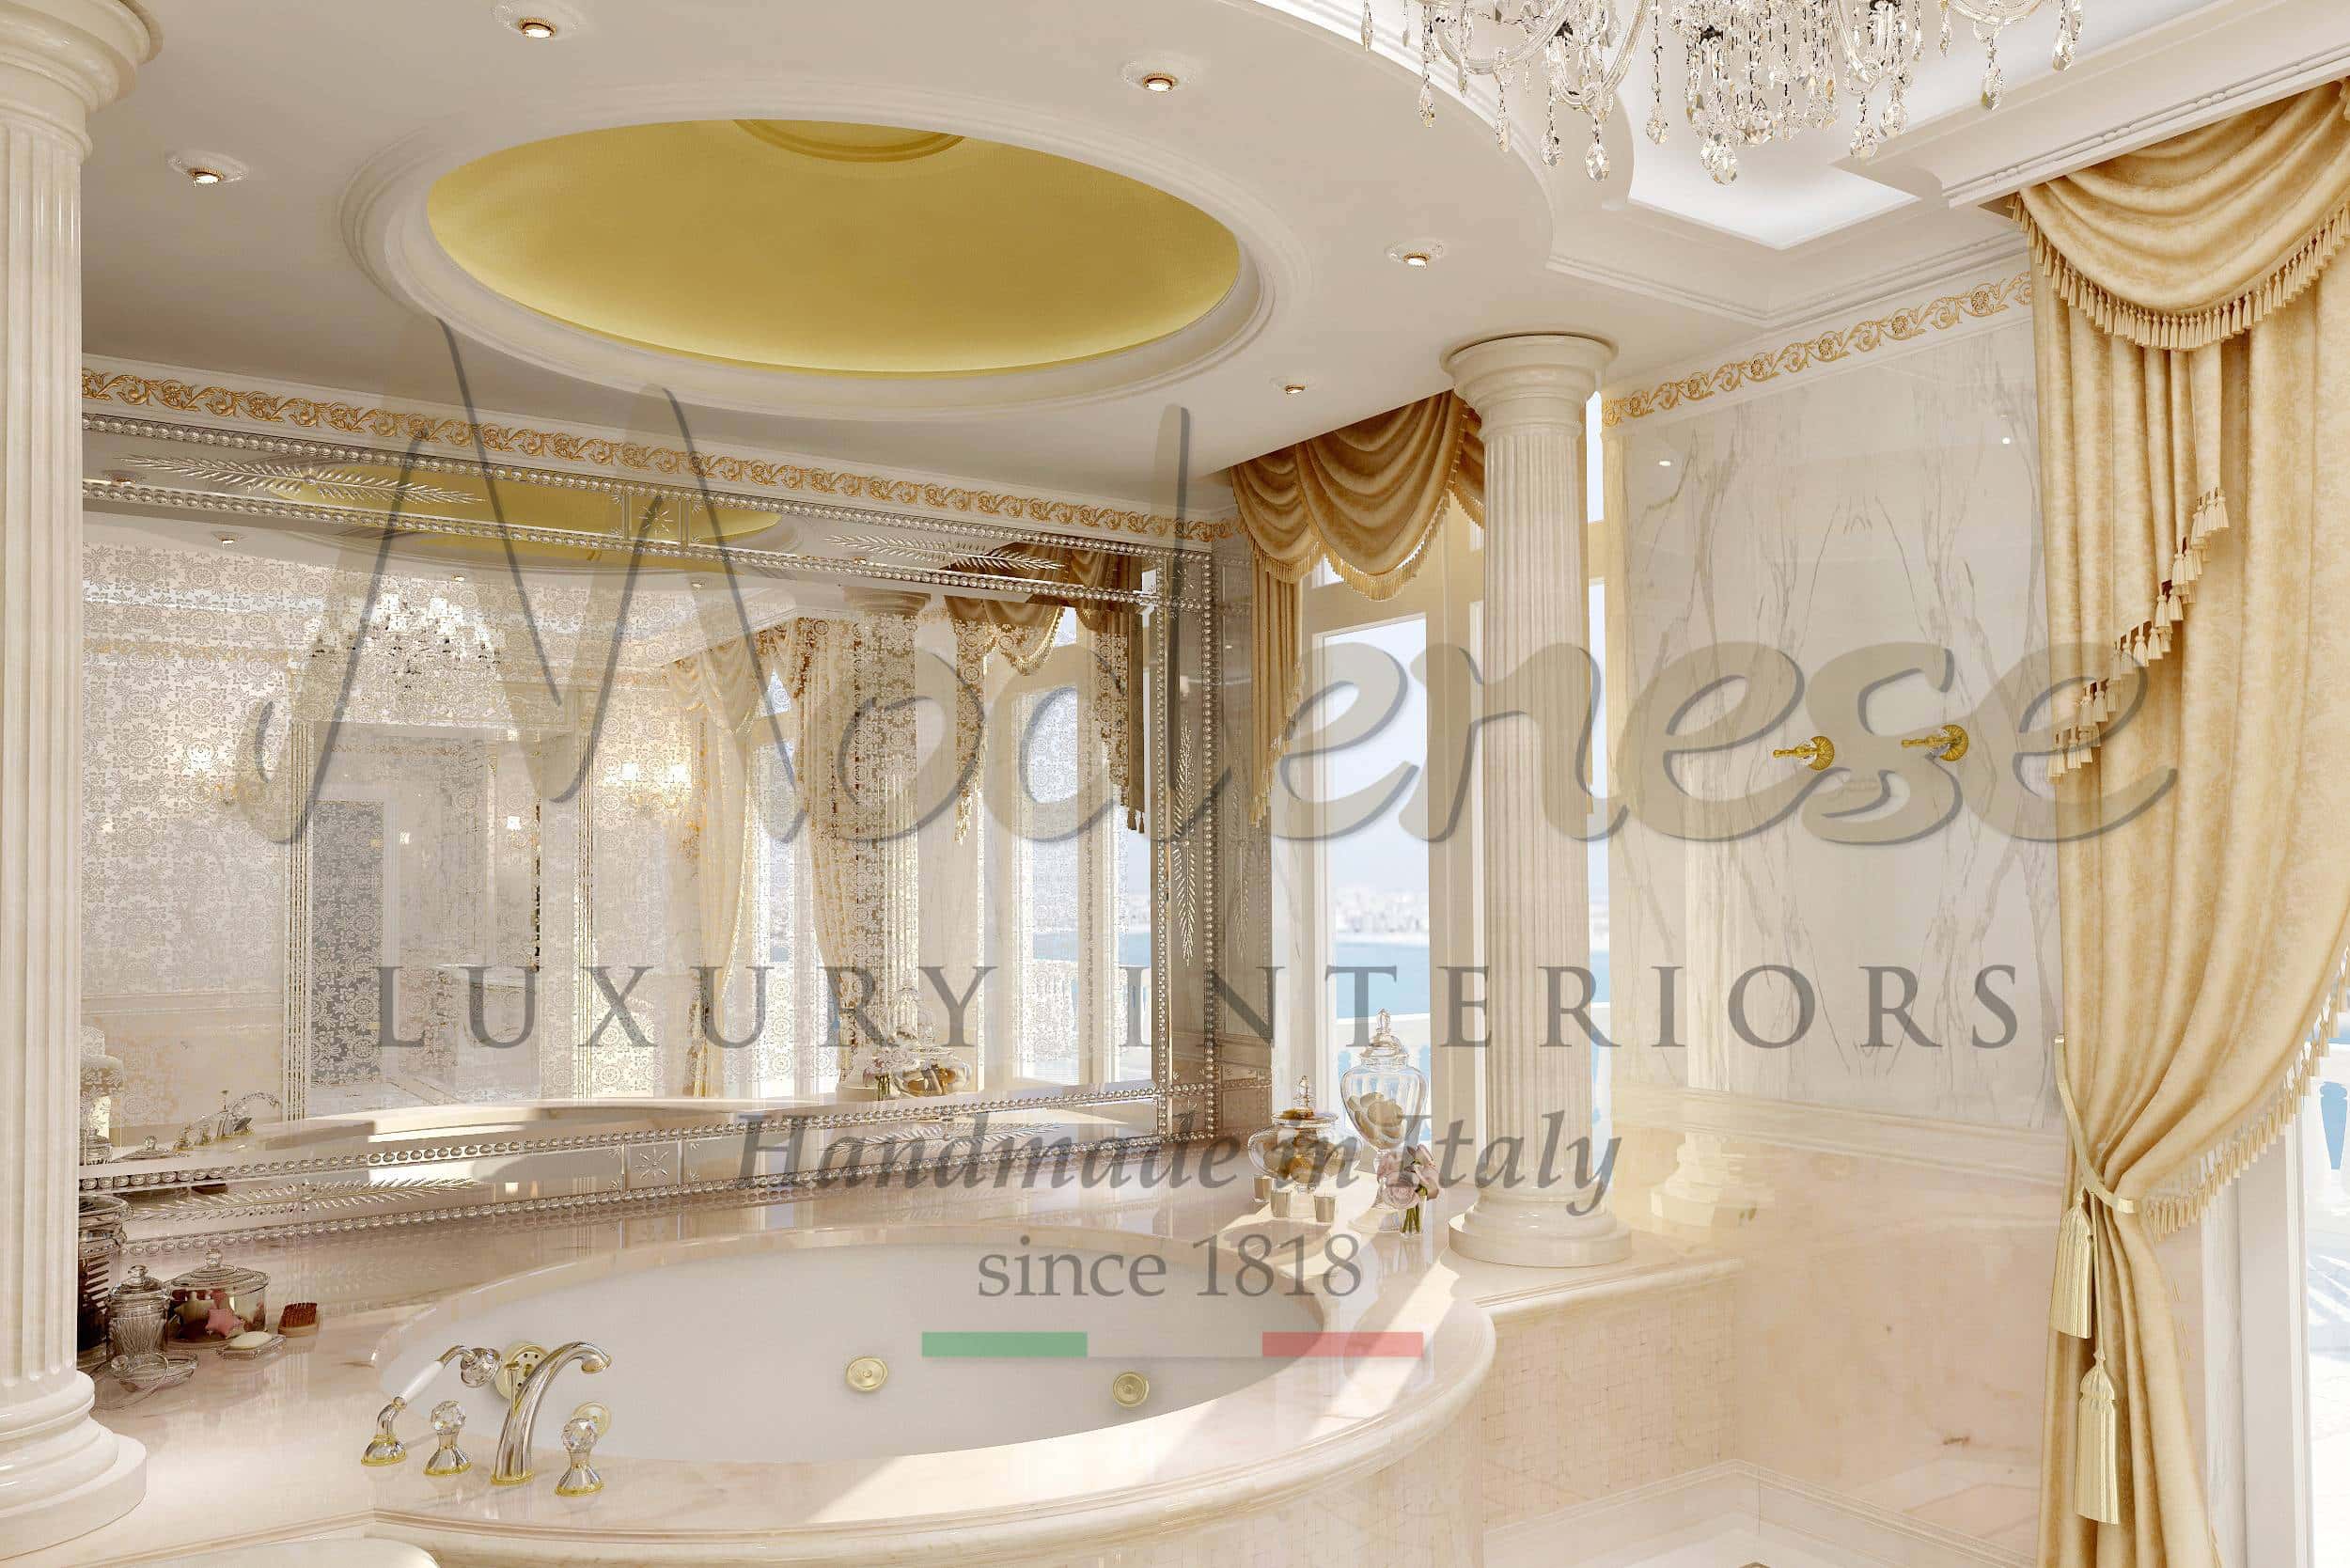 гардеробная комната на заказ из массива дерева ручная работа из Италии золото резьба роскошь элитный дизайн проект элегантный итальянский интерьер